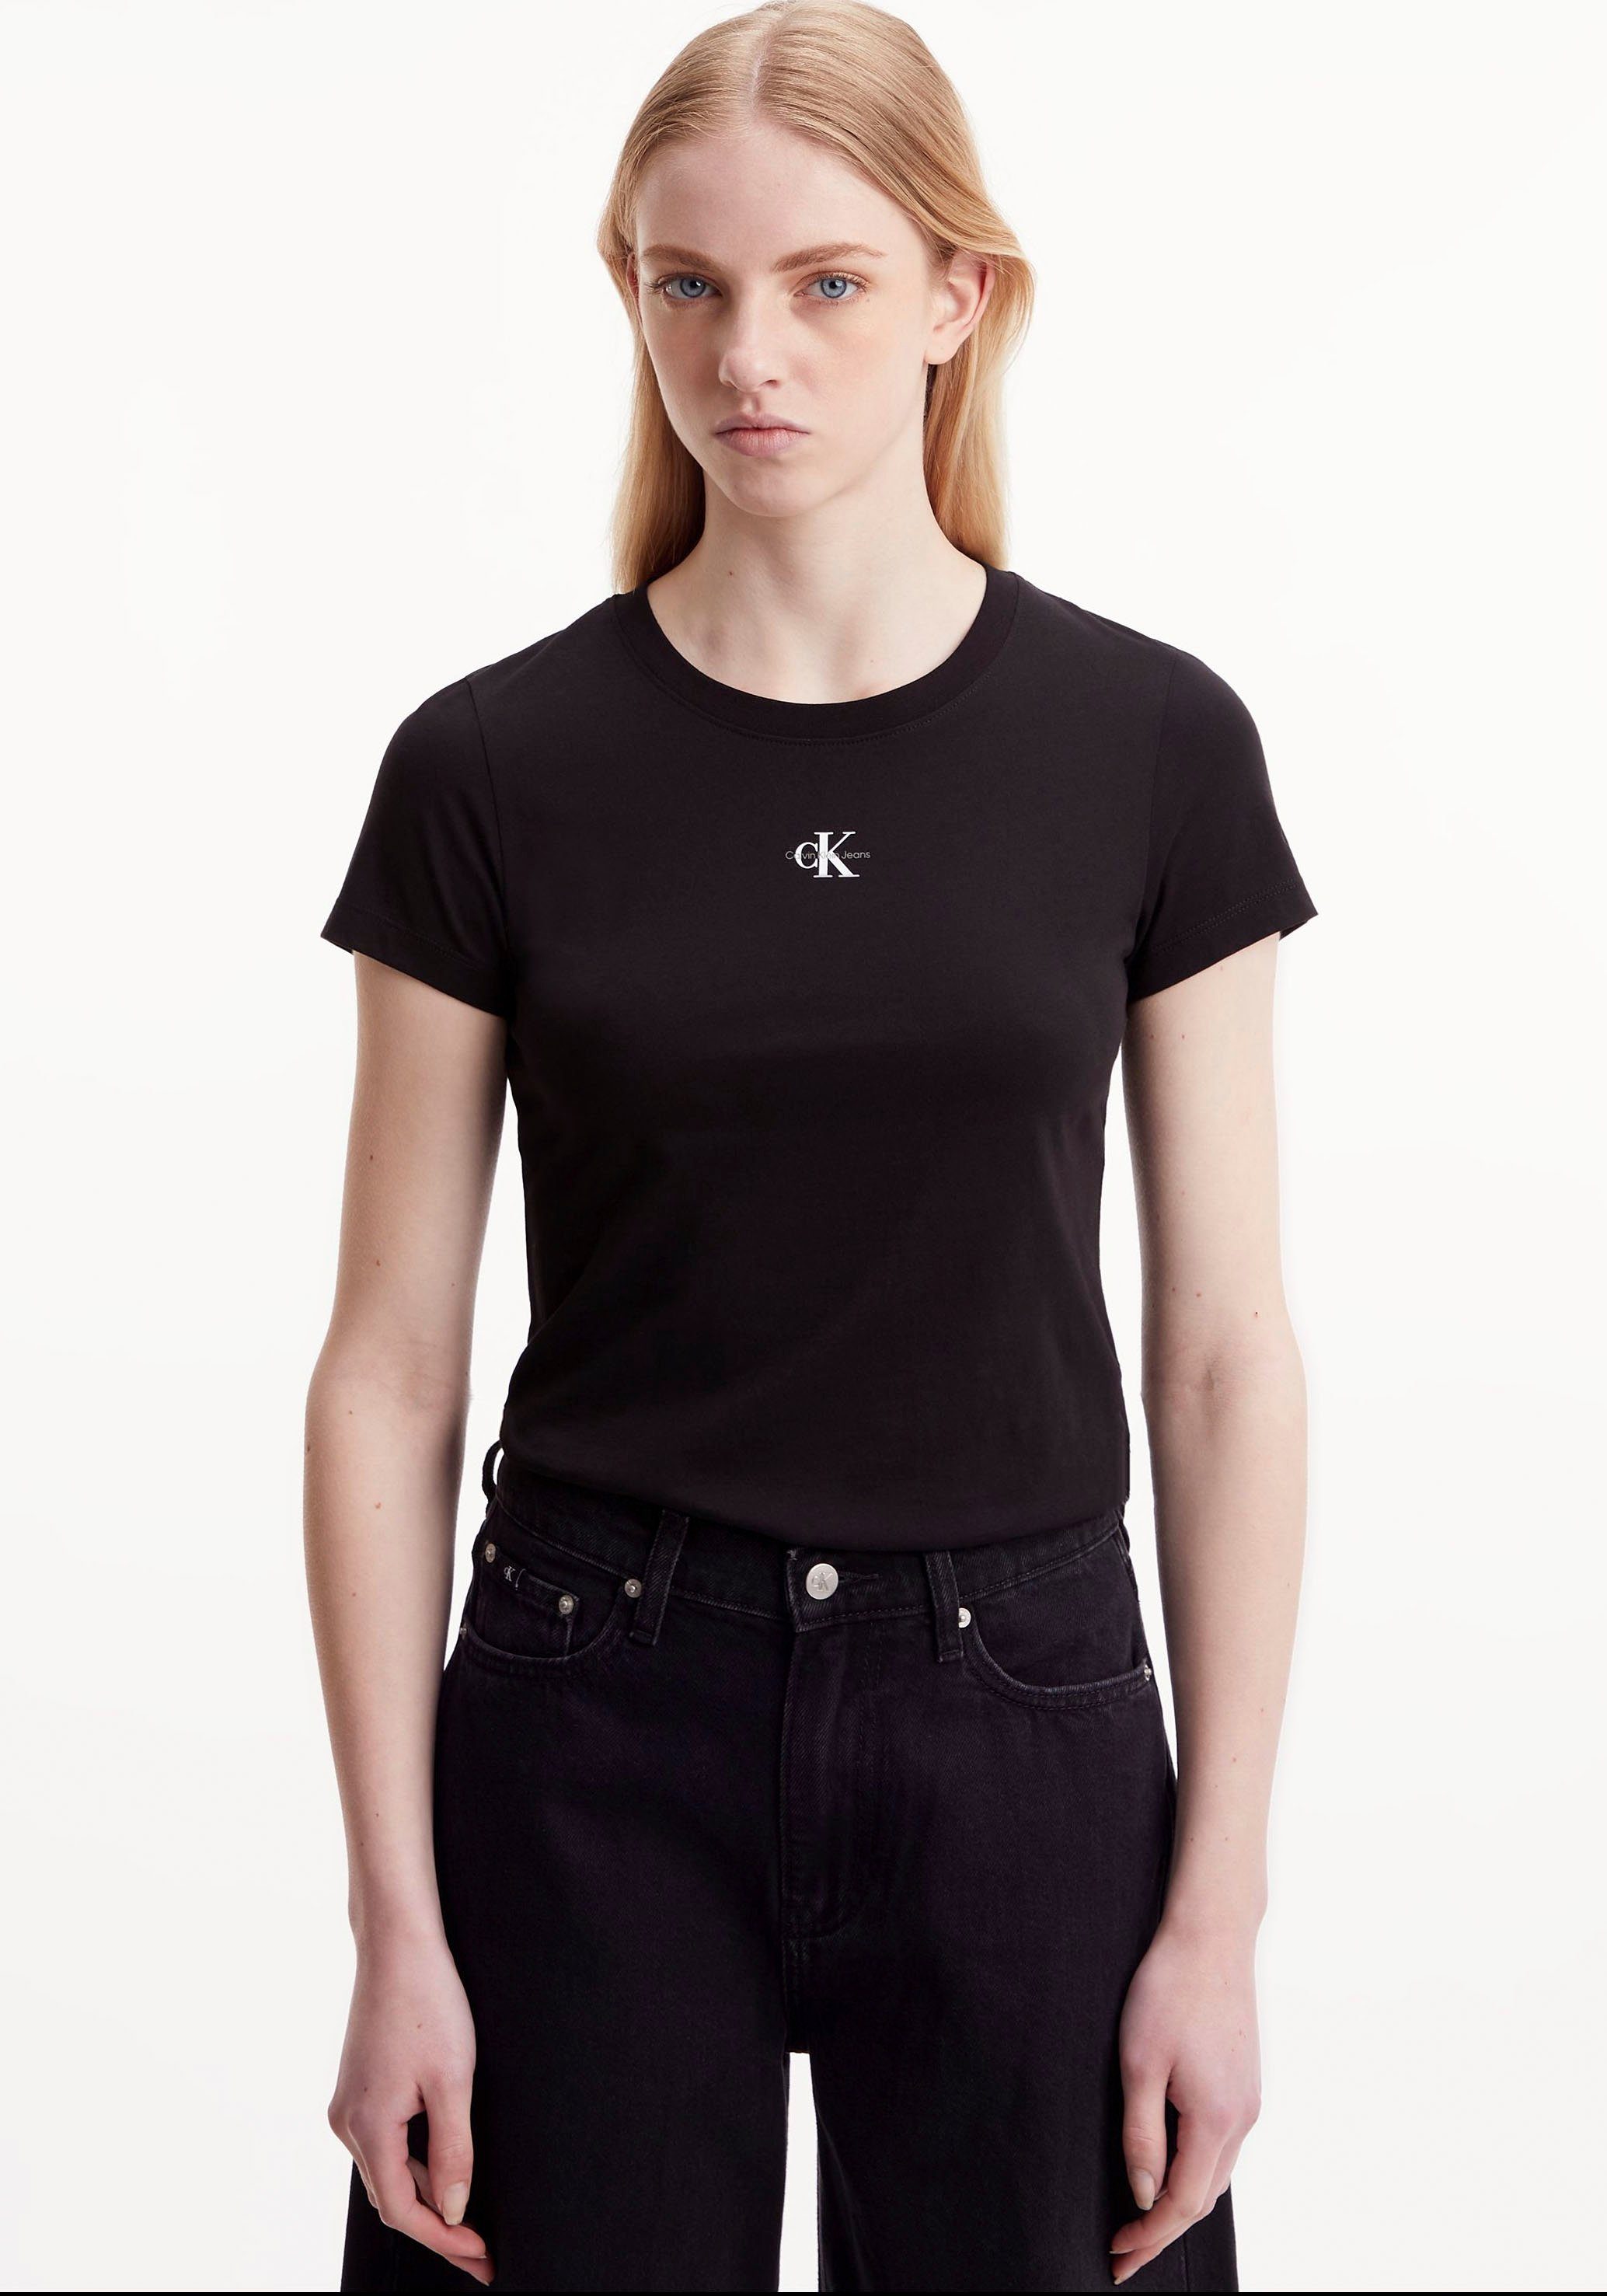 Niedrigster Preis im Land! Calvin Klein Jeans Rundhalsausschnitt T-Shirt MICRO Ck TEE MONOLOGO Black SLIM FIT mit